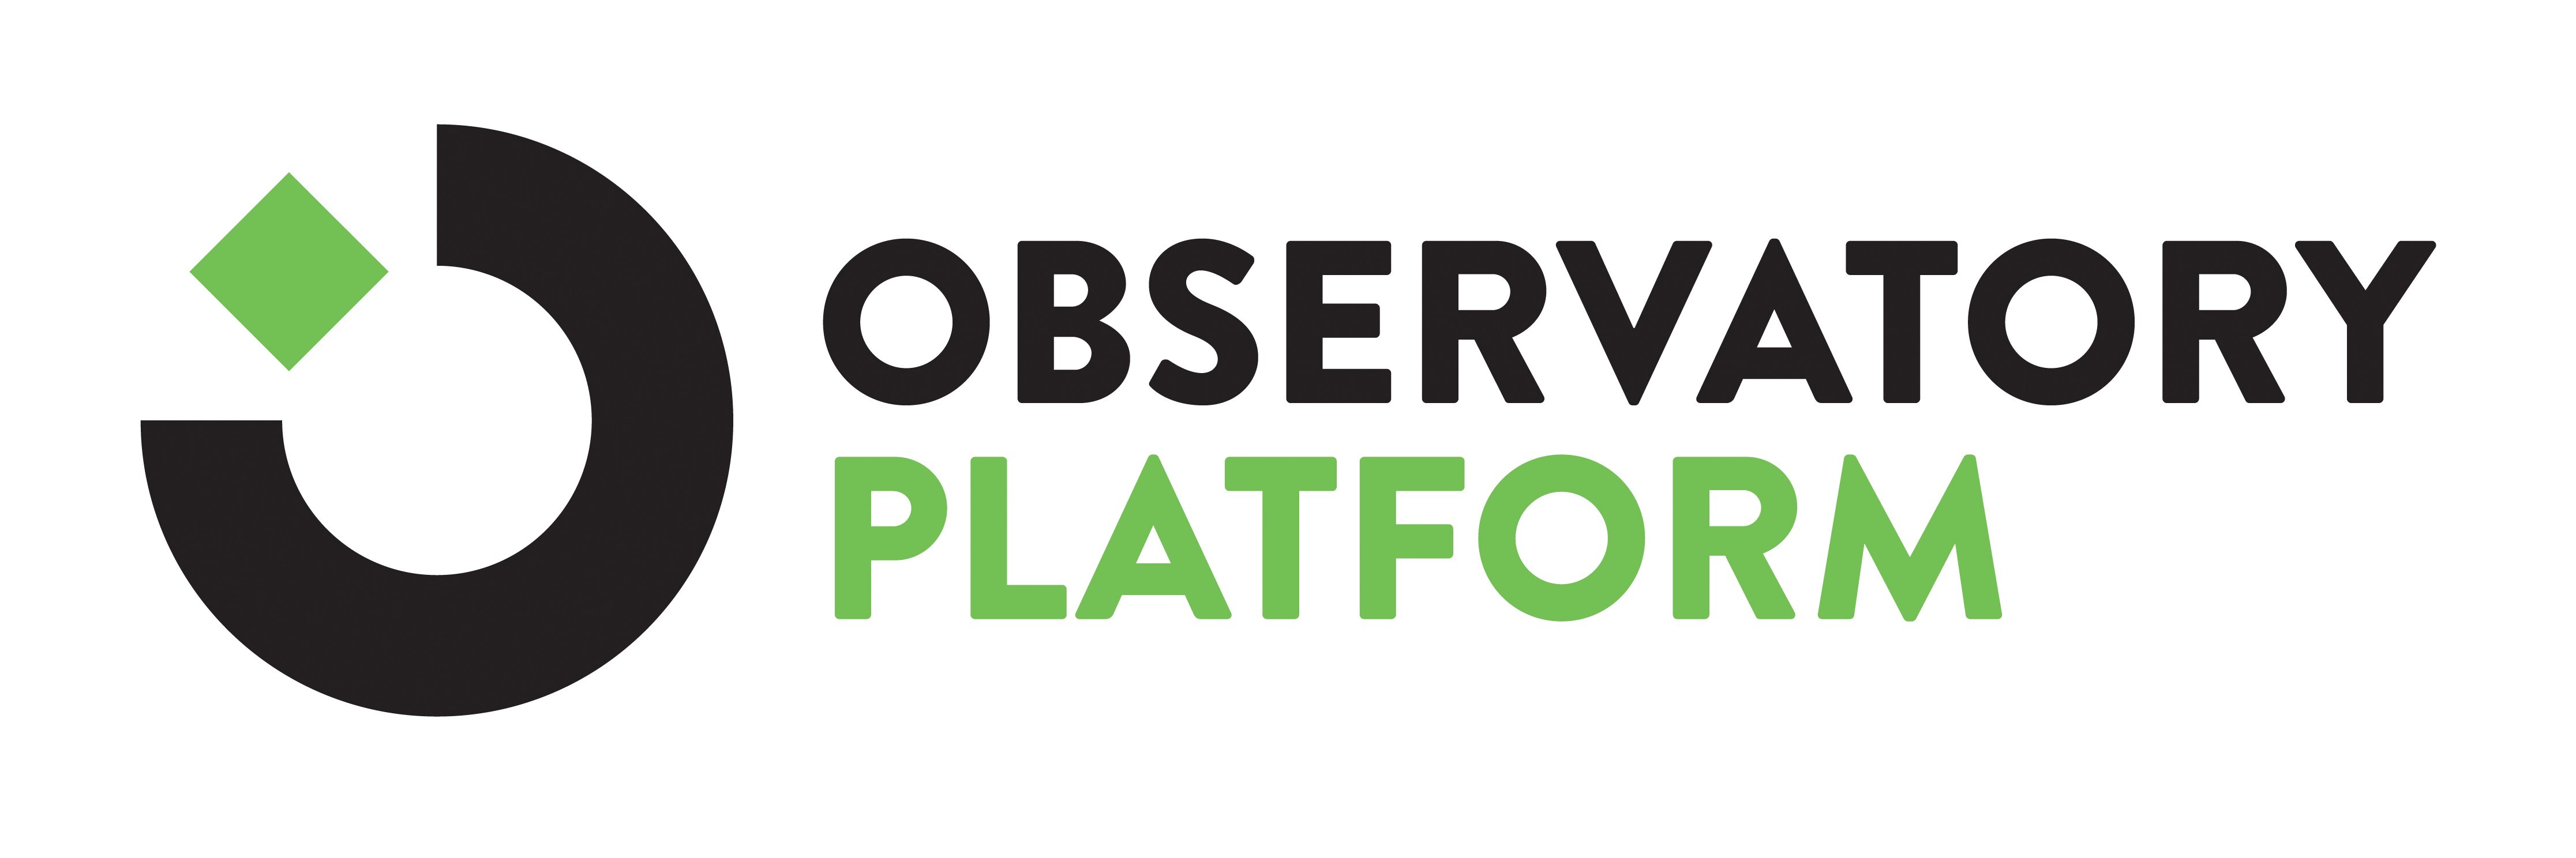 Observatory Platform